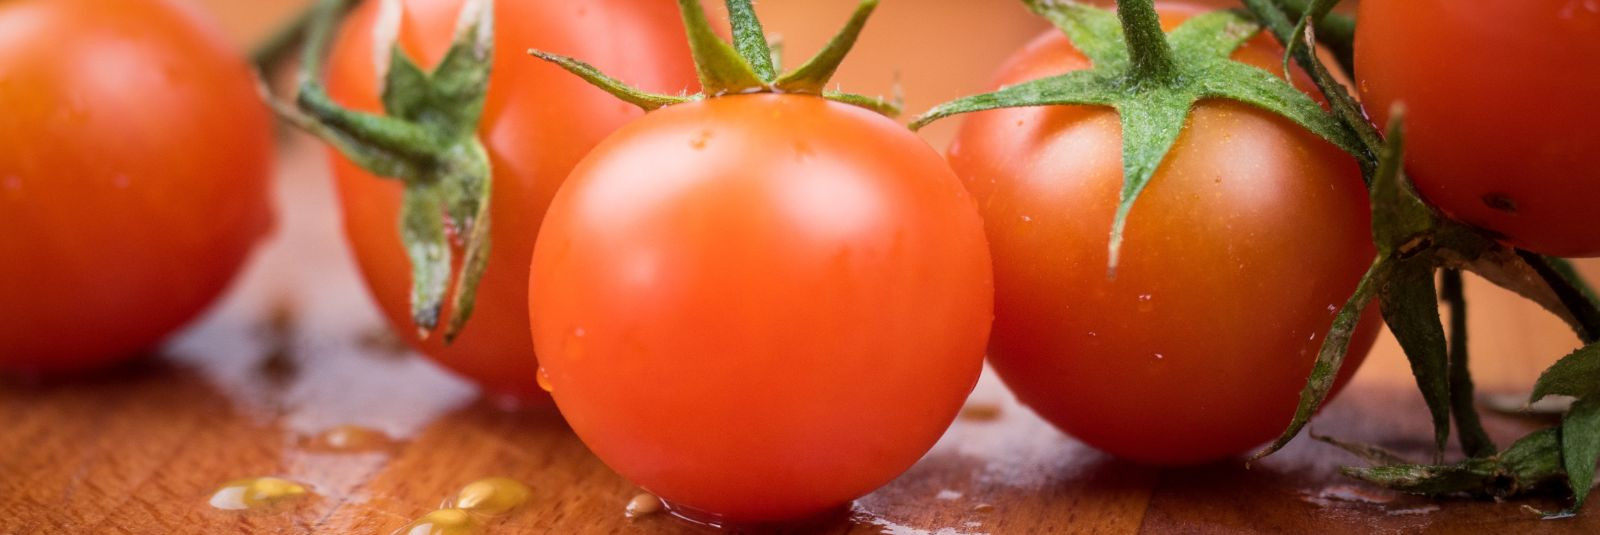 Tomatimahl on üks neist jookidest, mis pakub mitte ainult suurepärast maitset, vaid ka tervislikku kasu. Kujutage ette, kuidas värske Eesti looduse jõud kohtub 